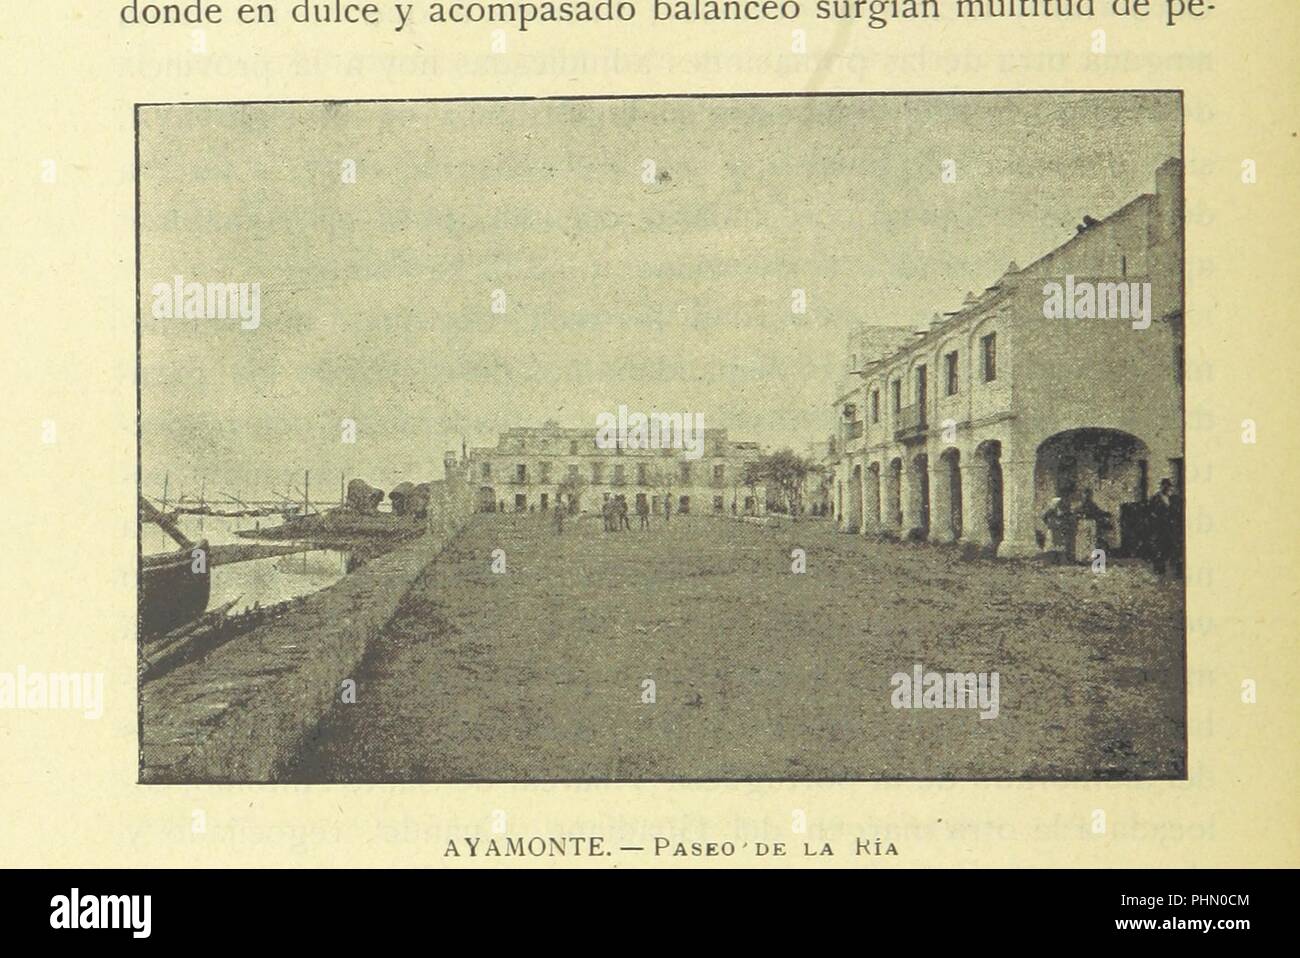 Libre à partir de la page 656 de "Huelva ... Fotograbados heliografías Joarizti y de y Mariezcurrena, dibujos y cromos de Isidro Gil' . Banque D'Images